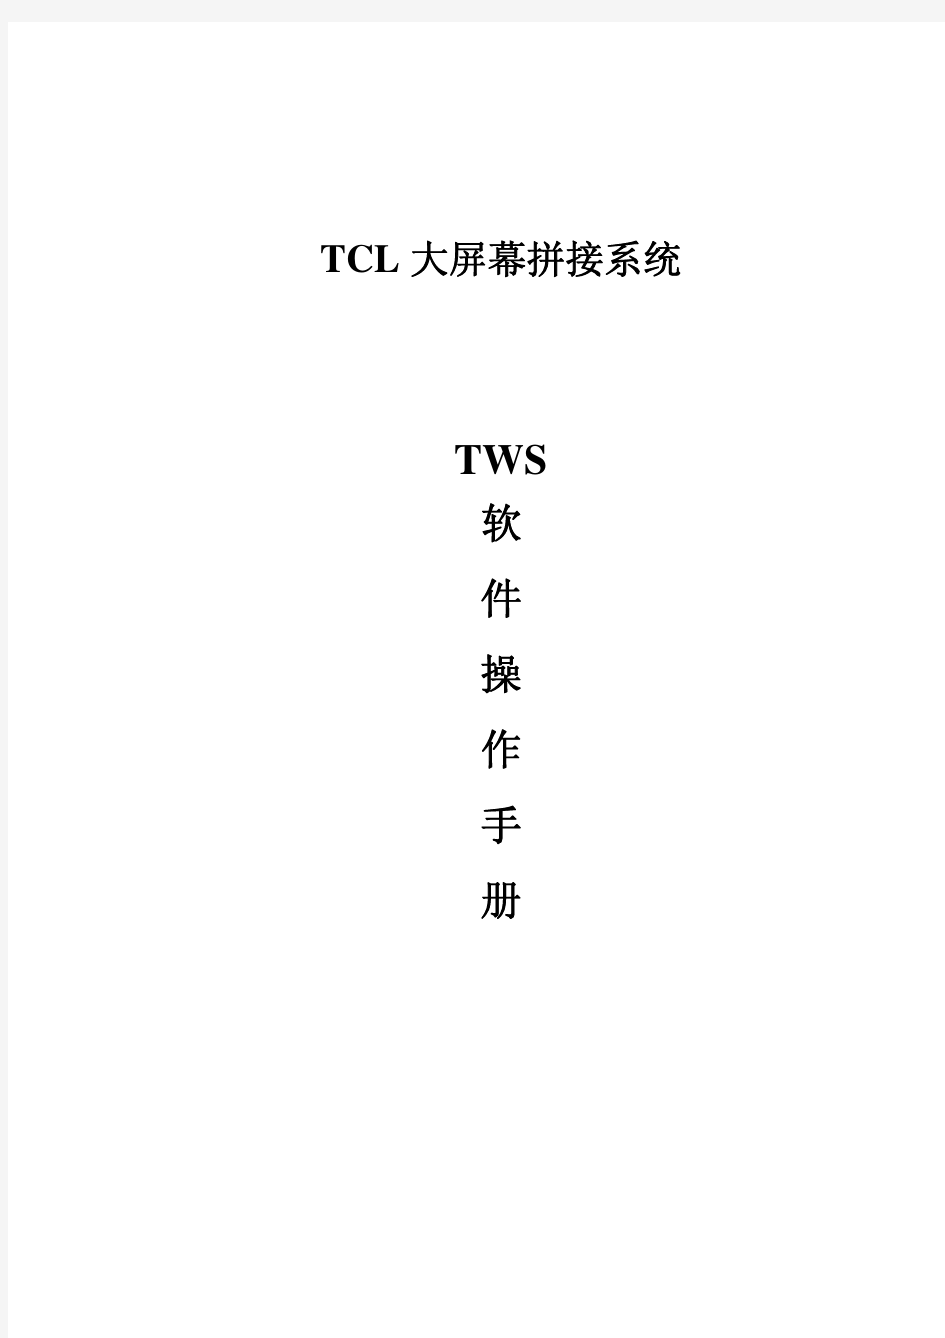 TCL-TWS大屏幕拼接控制软件操作手册